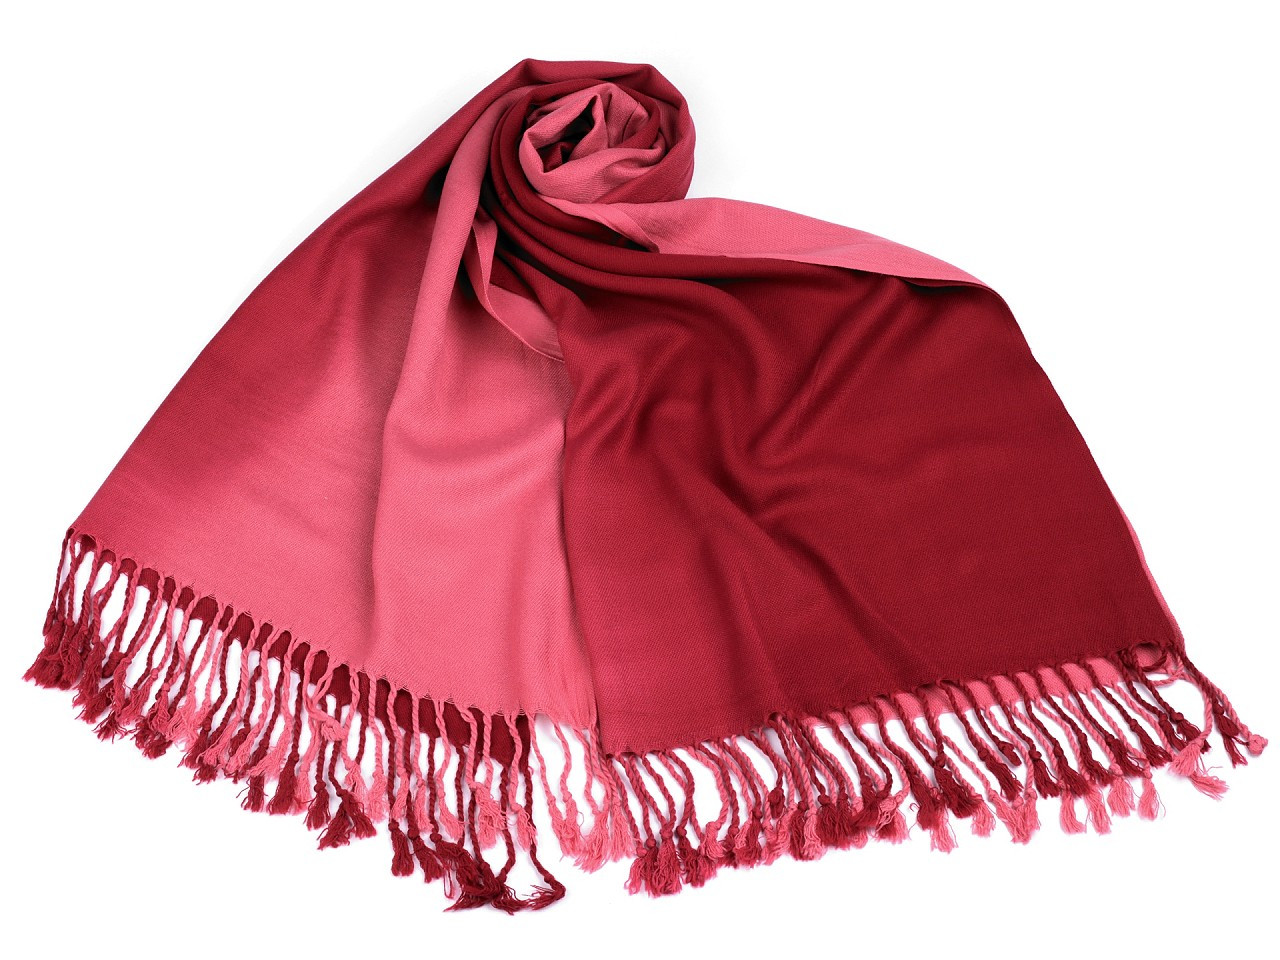 Šátek / šála ombré s třásněmi 65x180 cm, barva 7 jahodová světlá červená